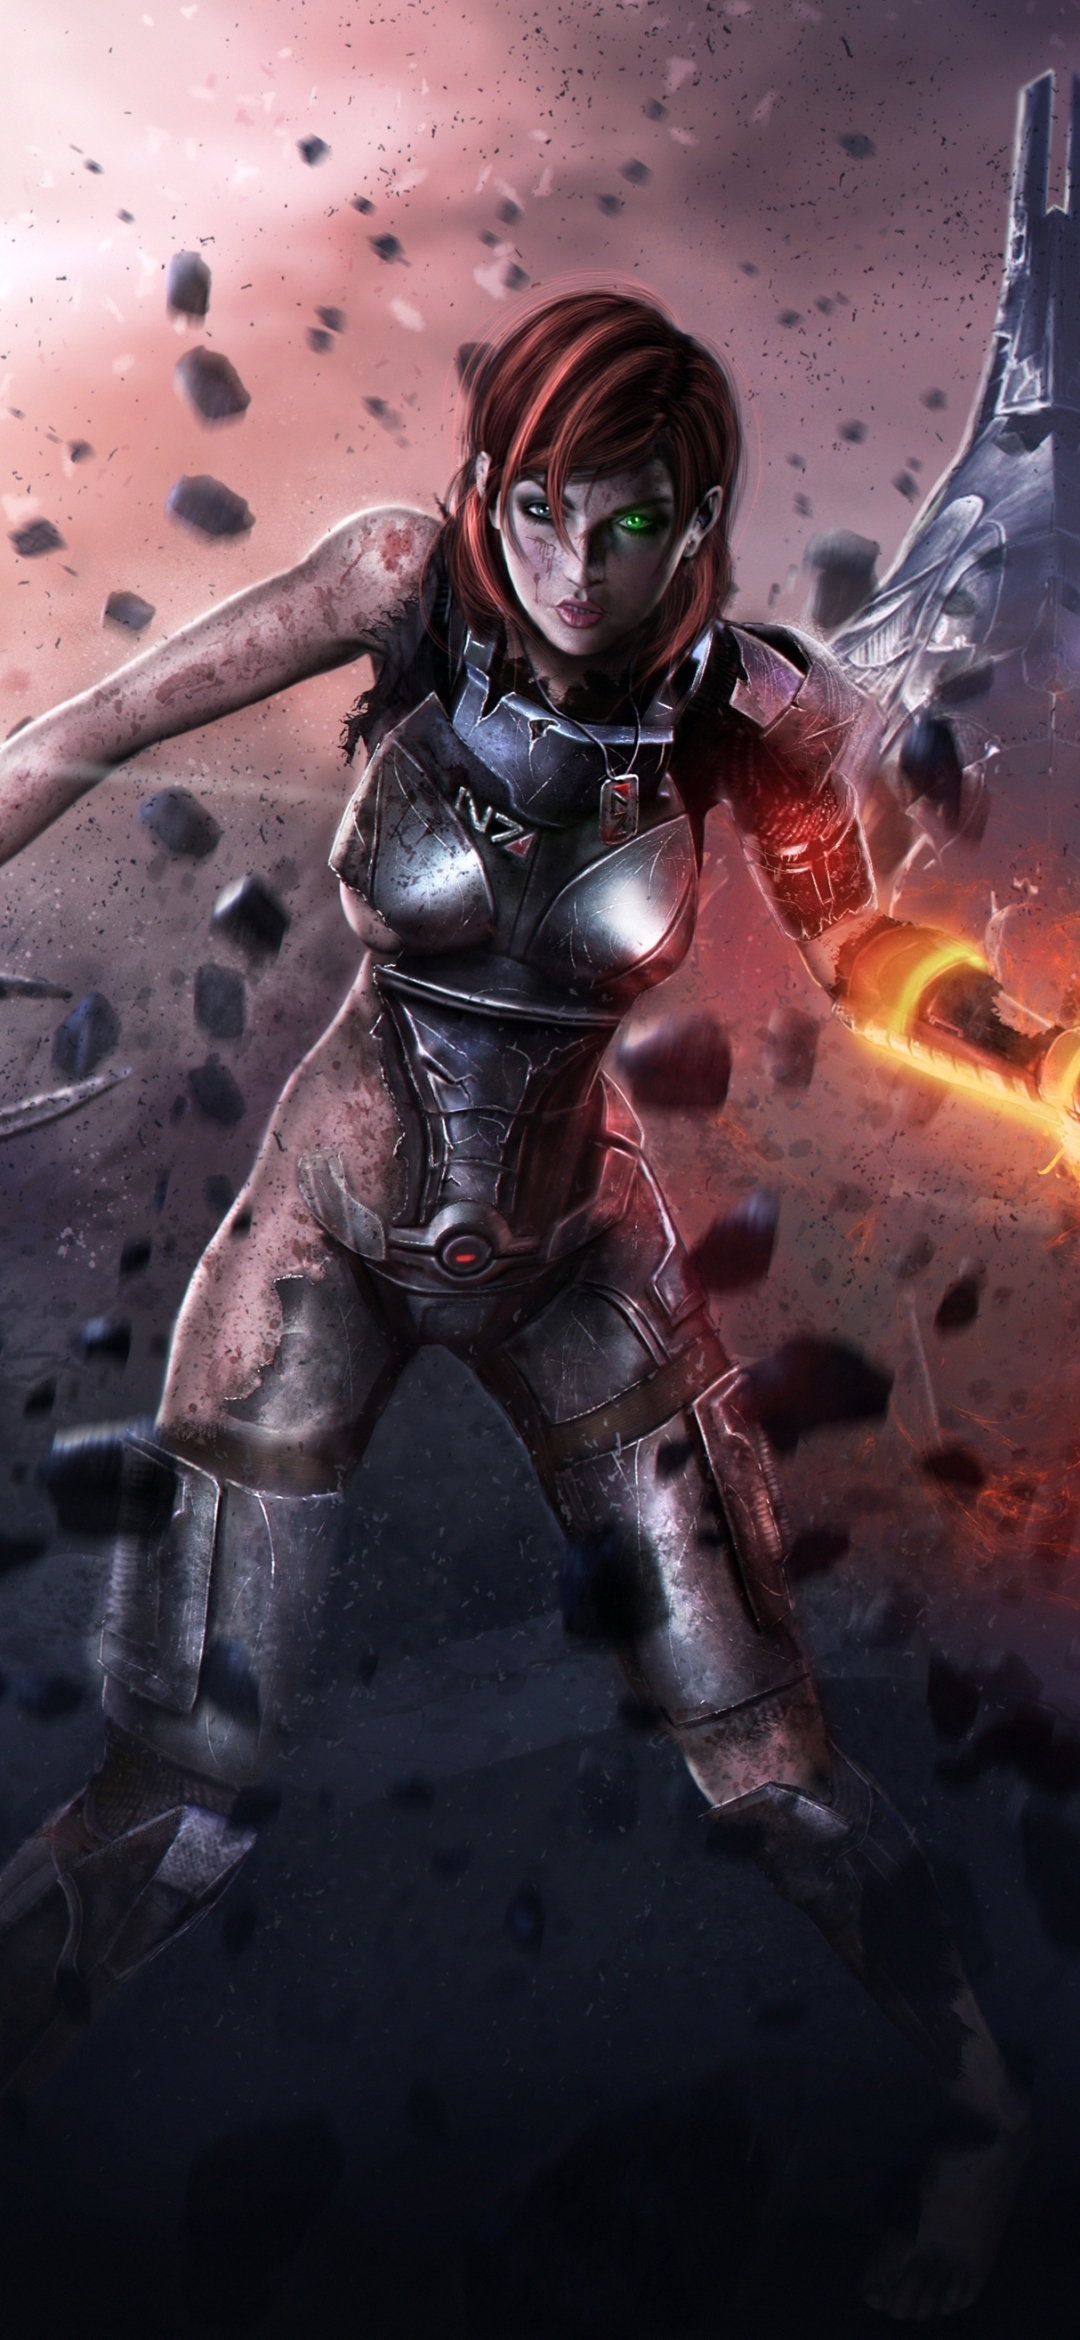 Descarga gratuita de fondo de pantalla para móvil de Mass Effect, Videojuego, Comandante Shepard.